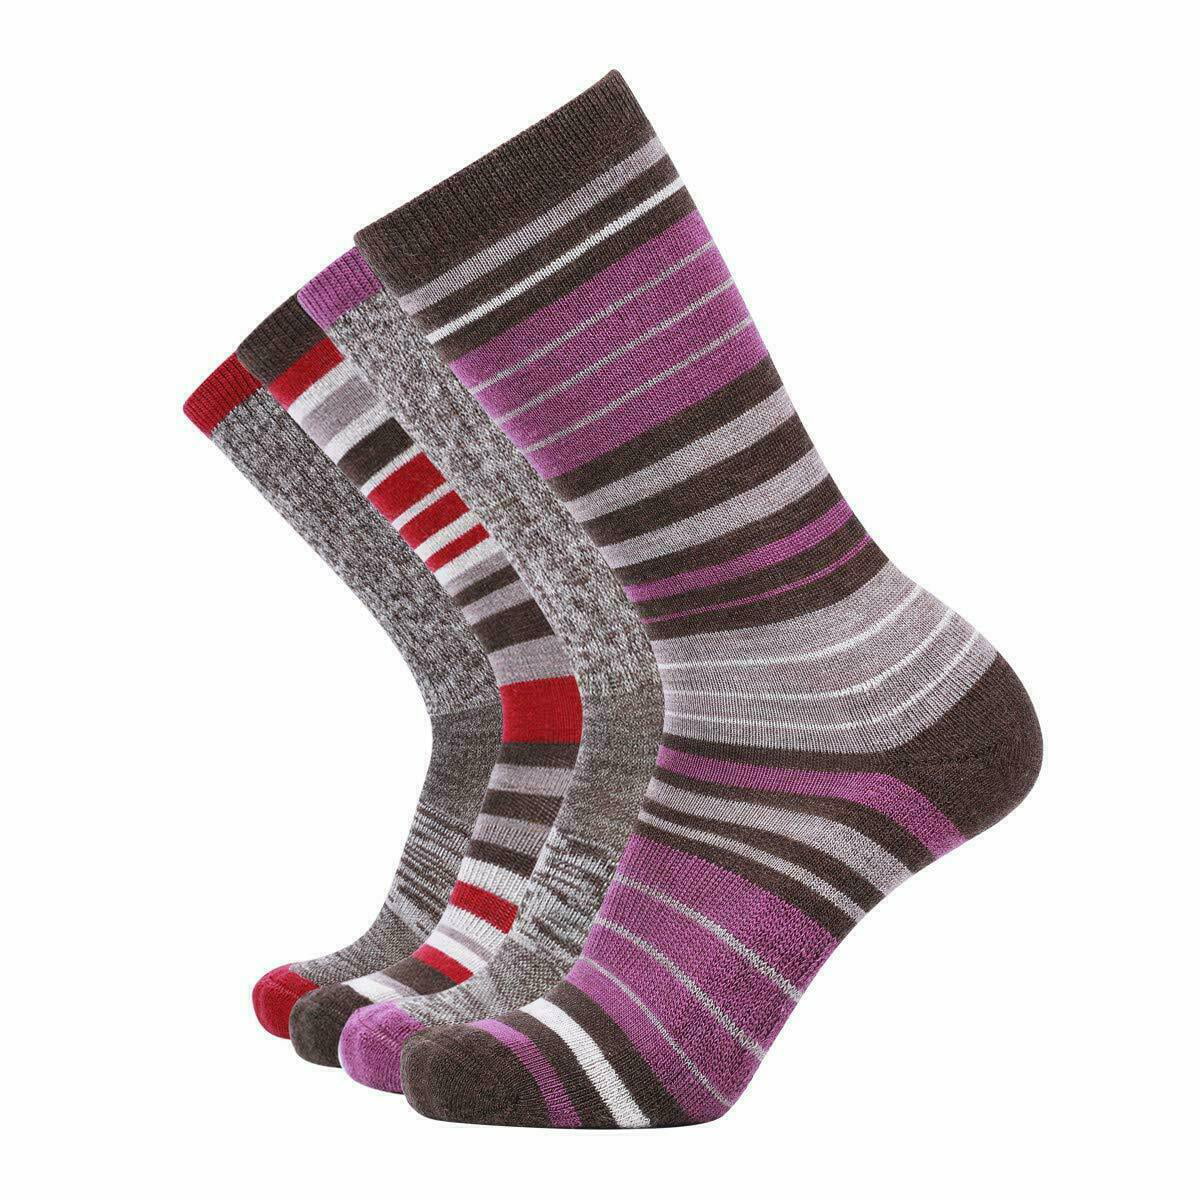 4 Pair Ladies Women's Trendy Wool Socks Winter Athletic Crew Sock Warm Hiking Mid Calf 